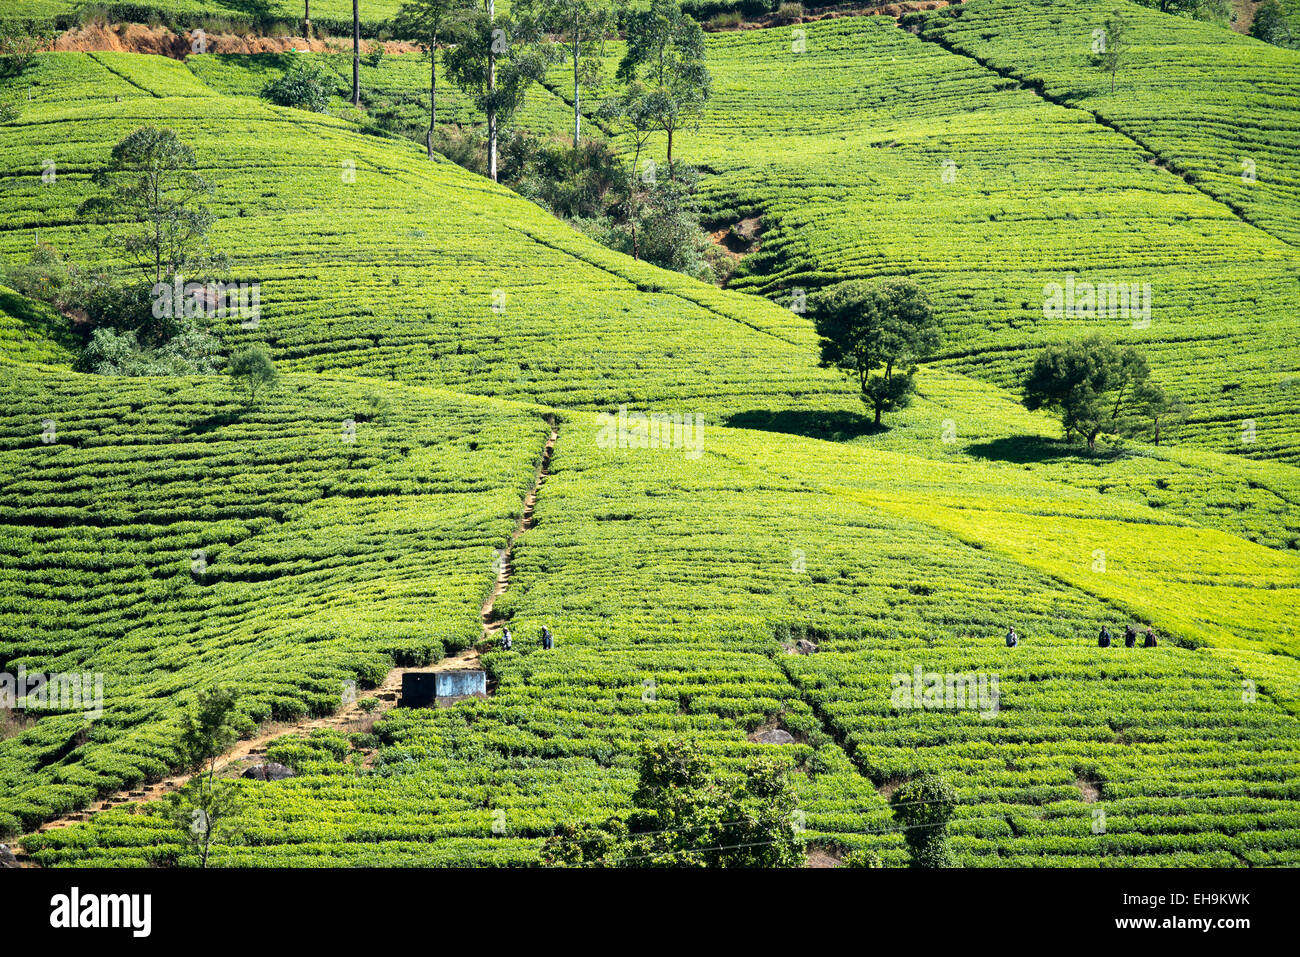 La plantation de thé sur la colline, le Sri Lanka, l'Asie Banque D'Images